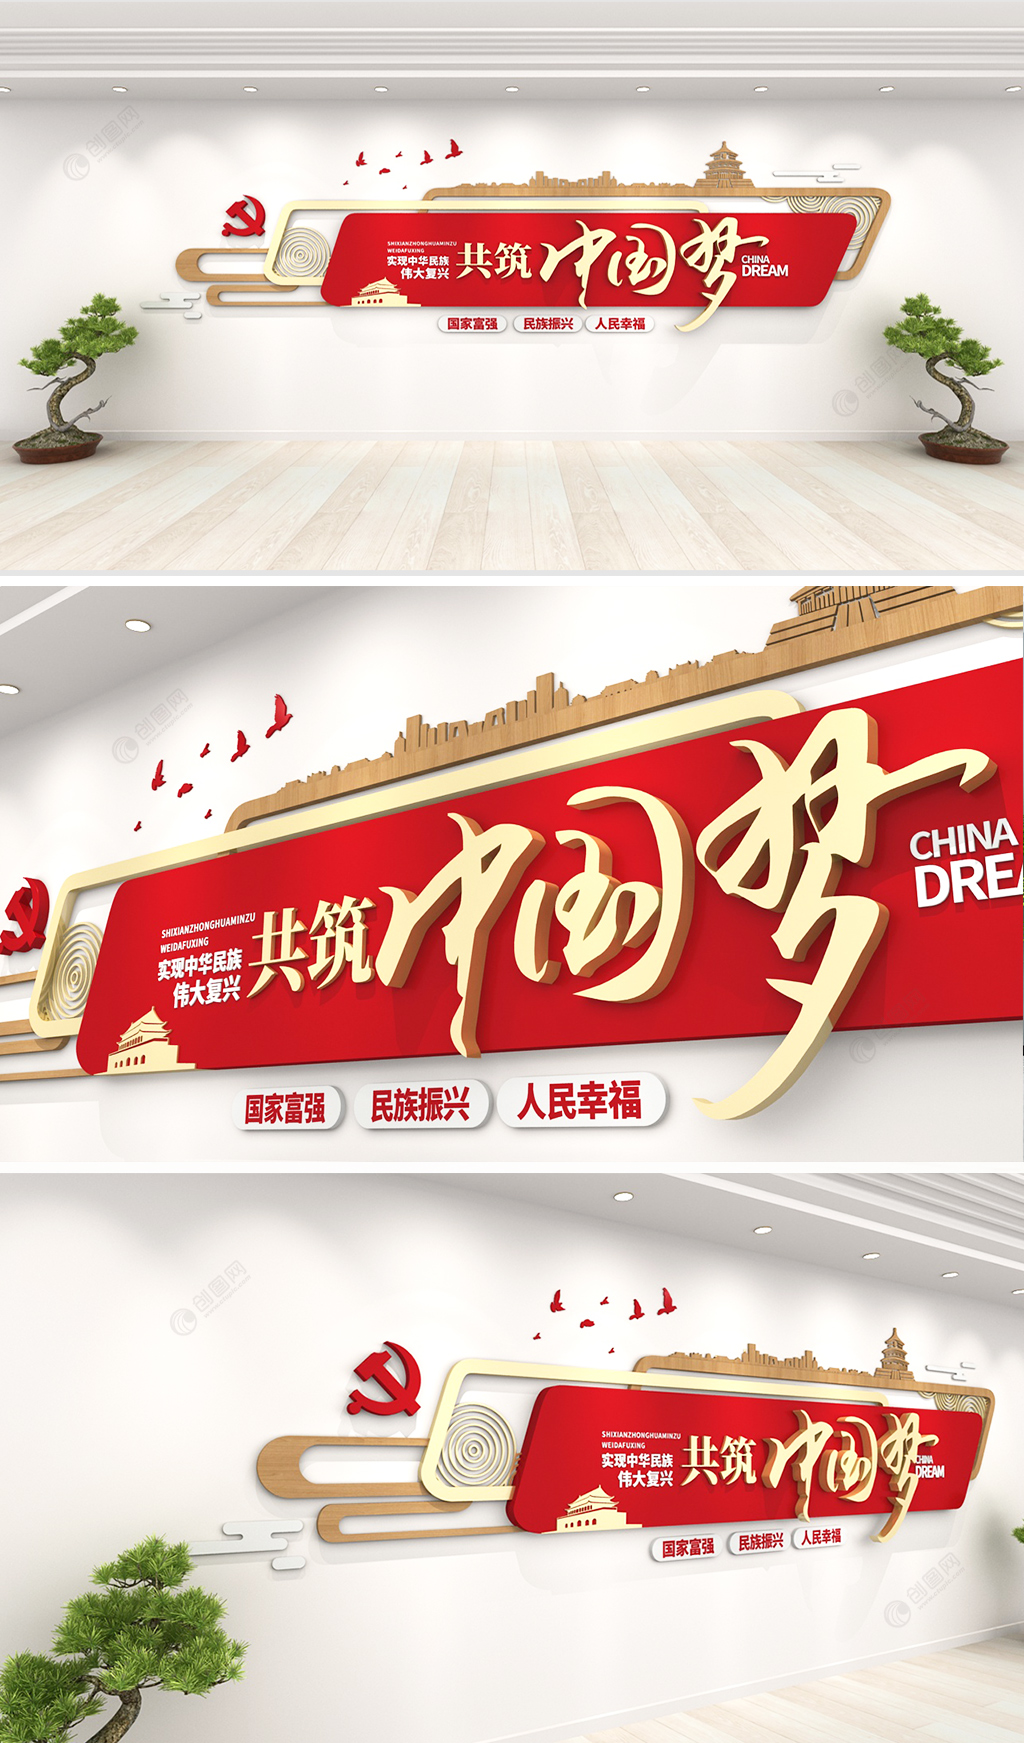 大气红色标语口号共筑中国梦创意党建文化墙设计